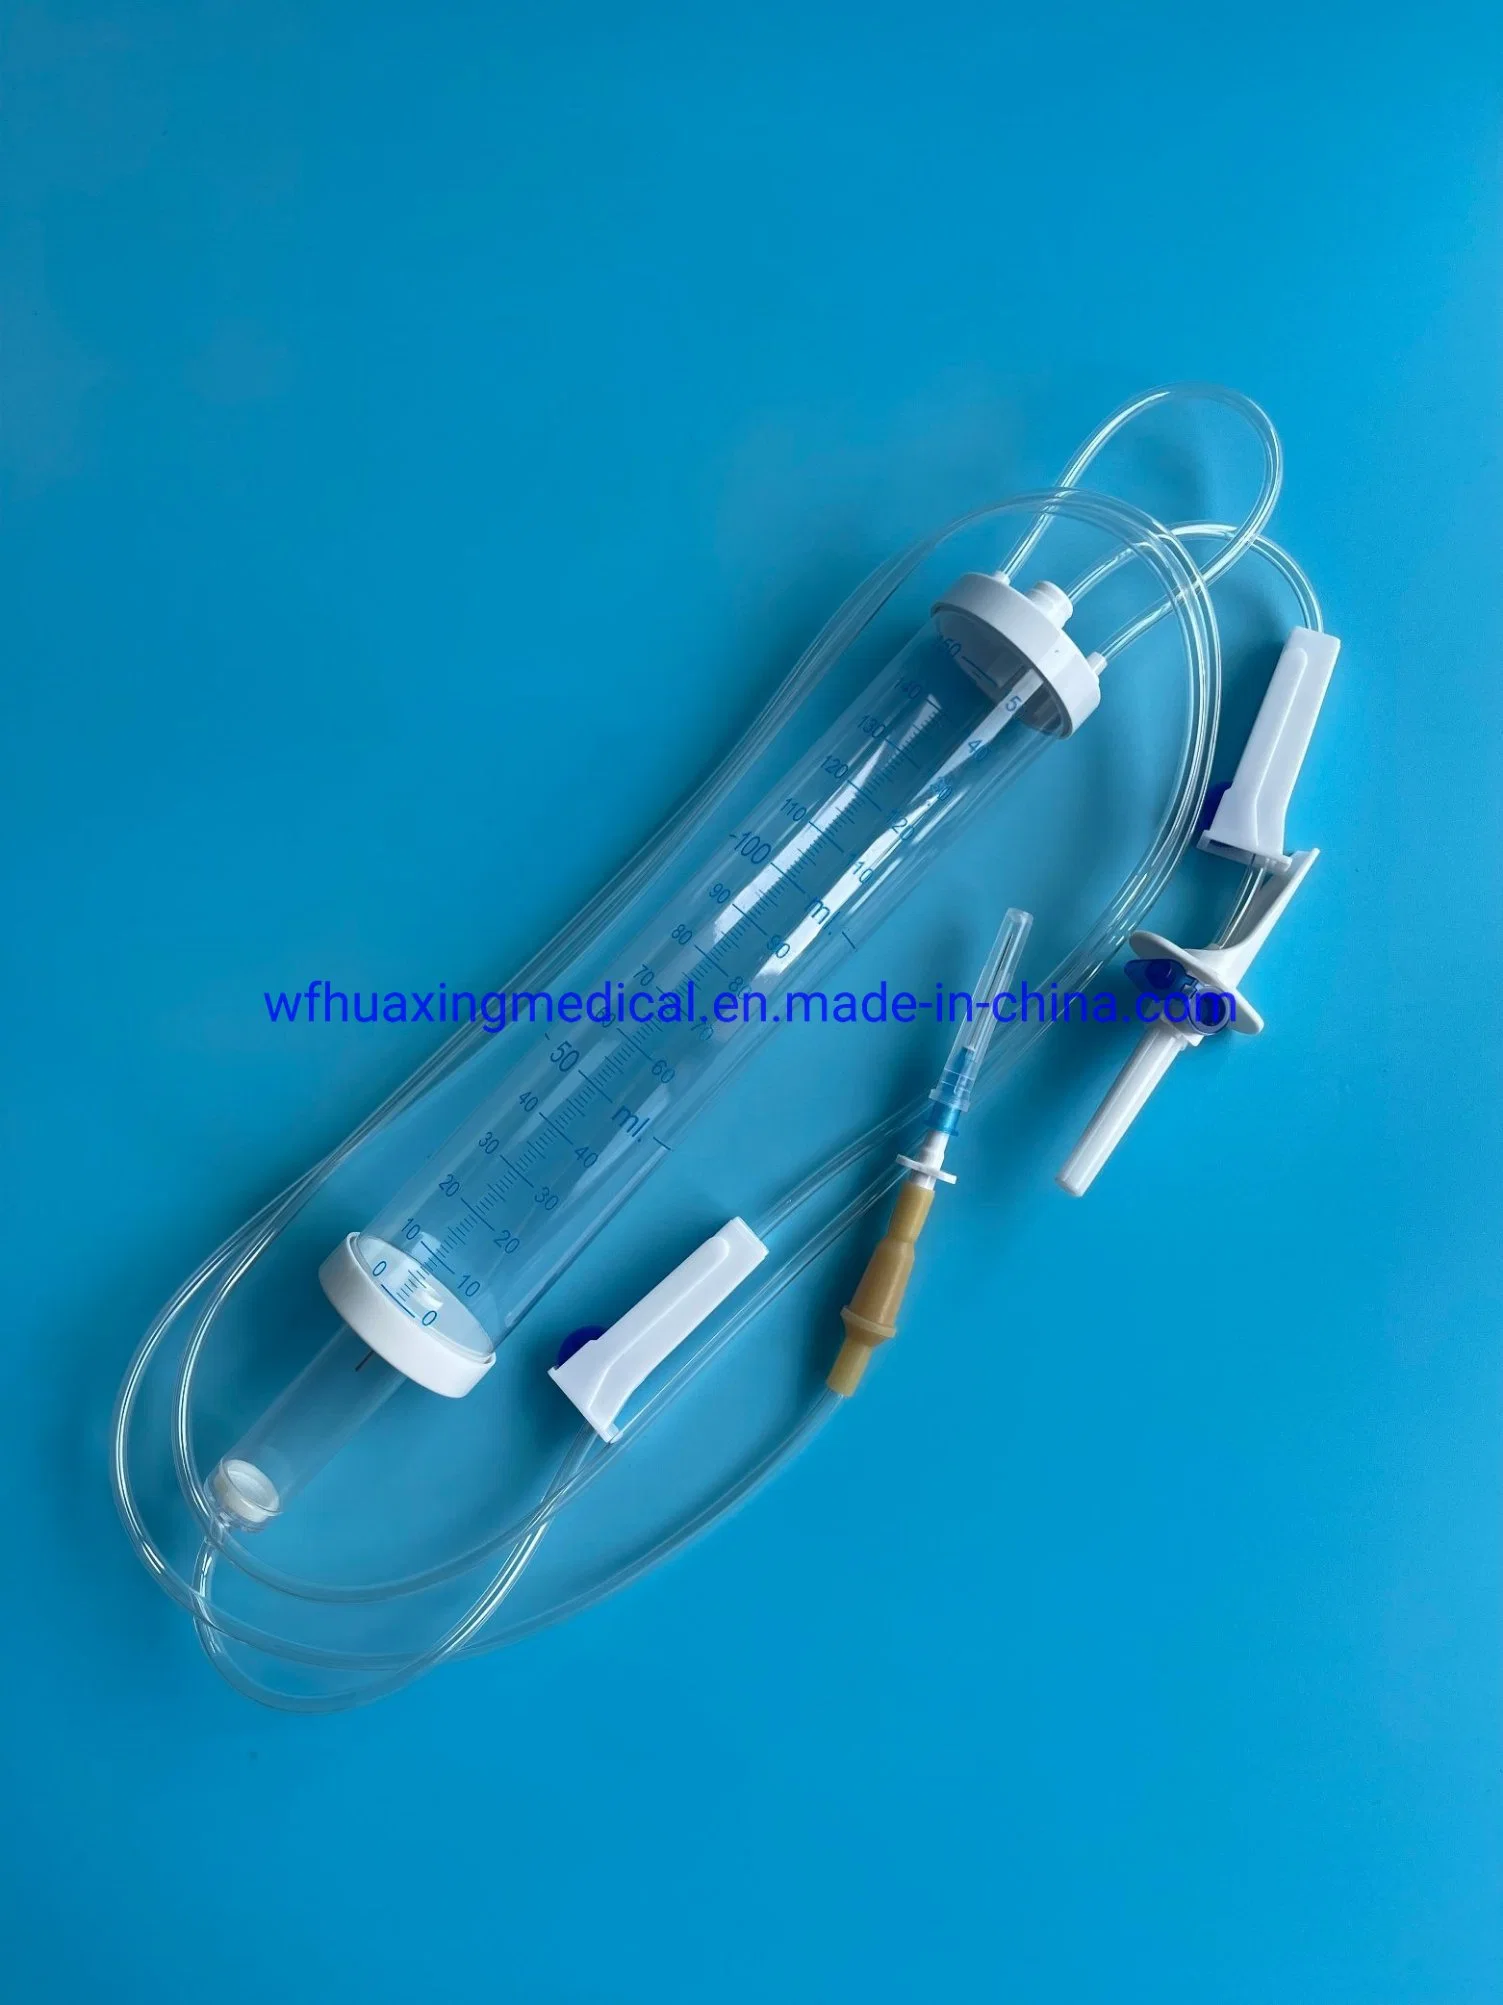 Les fournitures médicales jetables jetables set de perfusion périphérique portable burette 150ml 100 ml set de perfusion (nouveau)